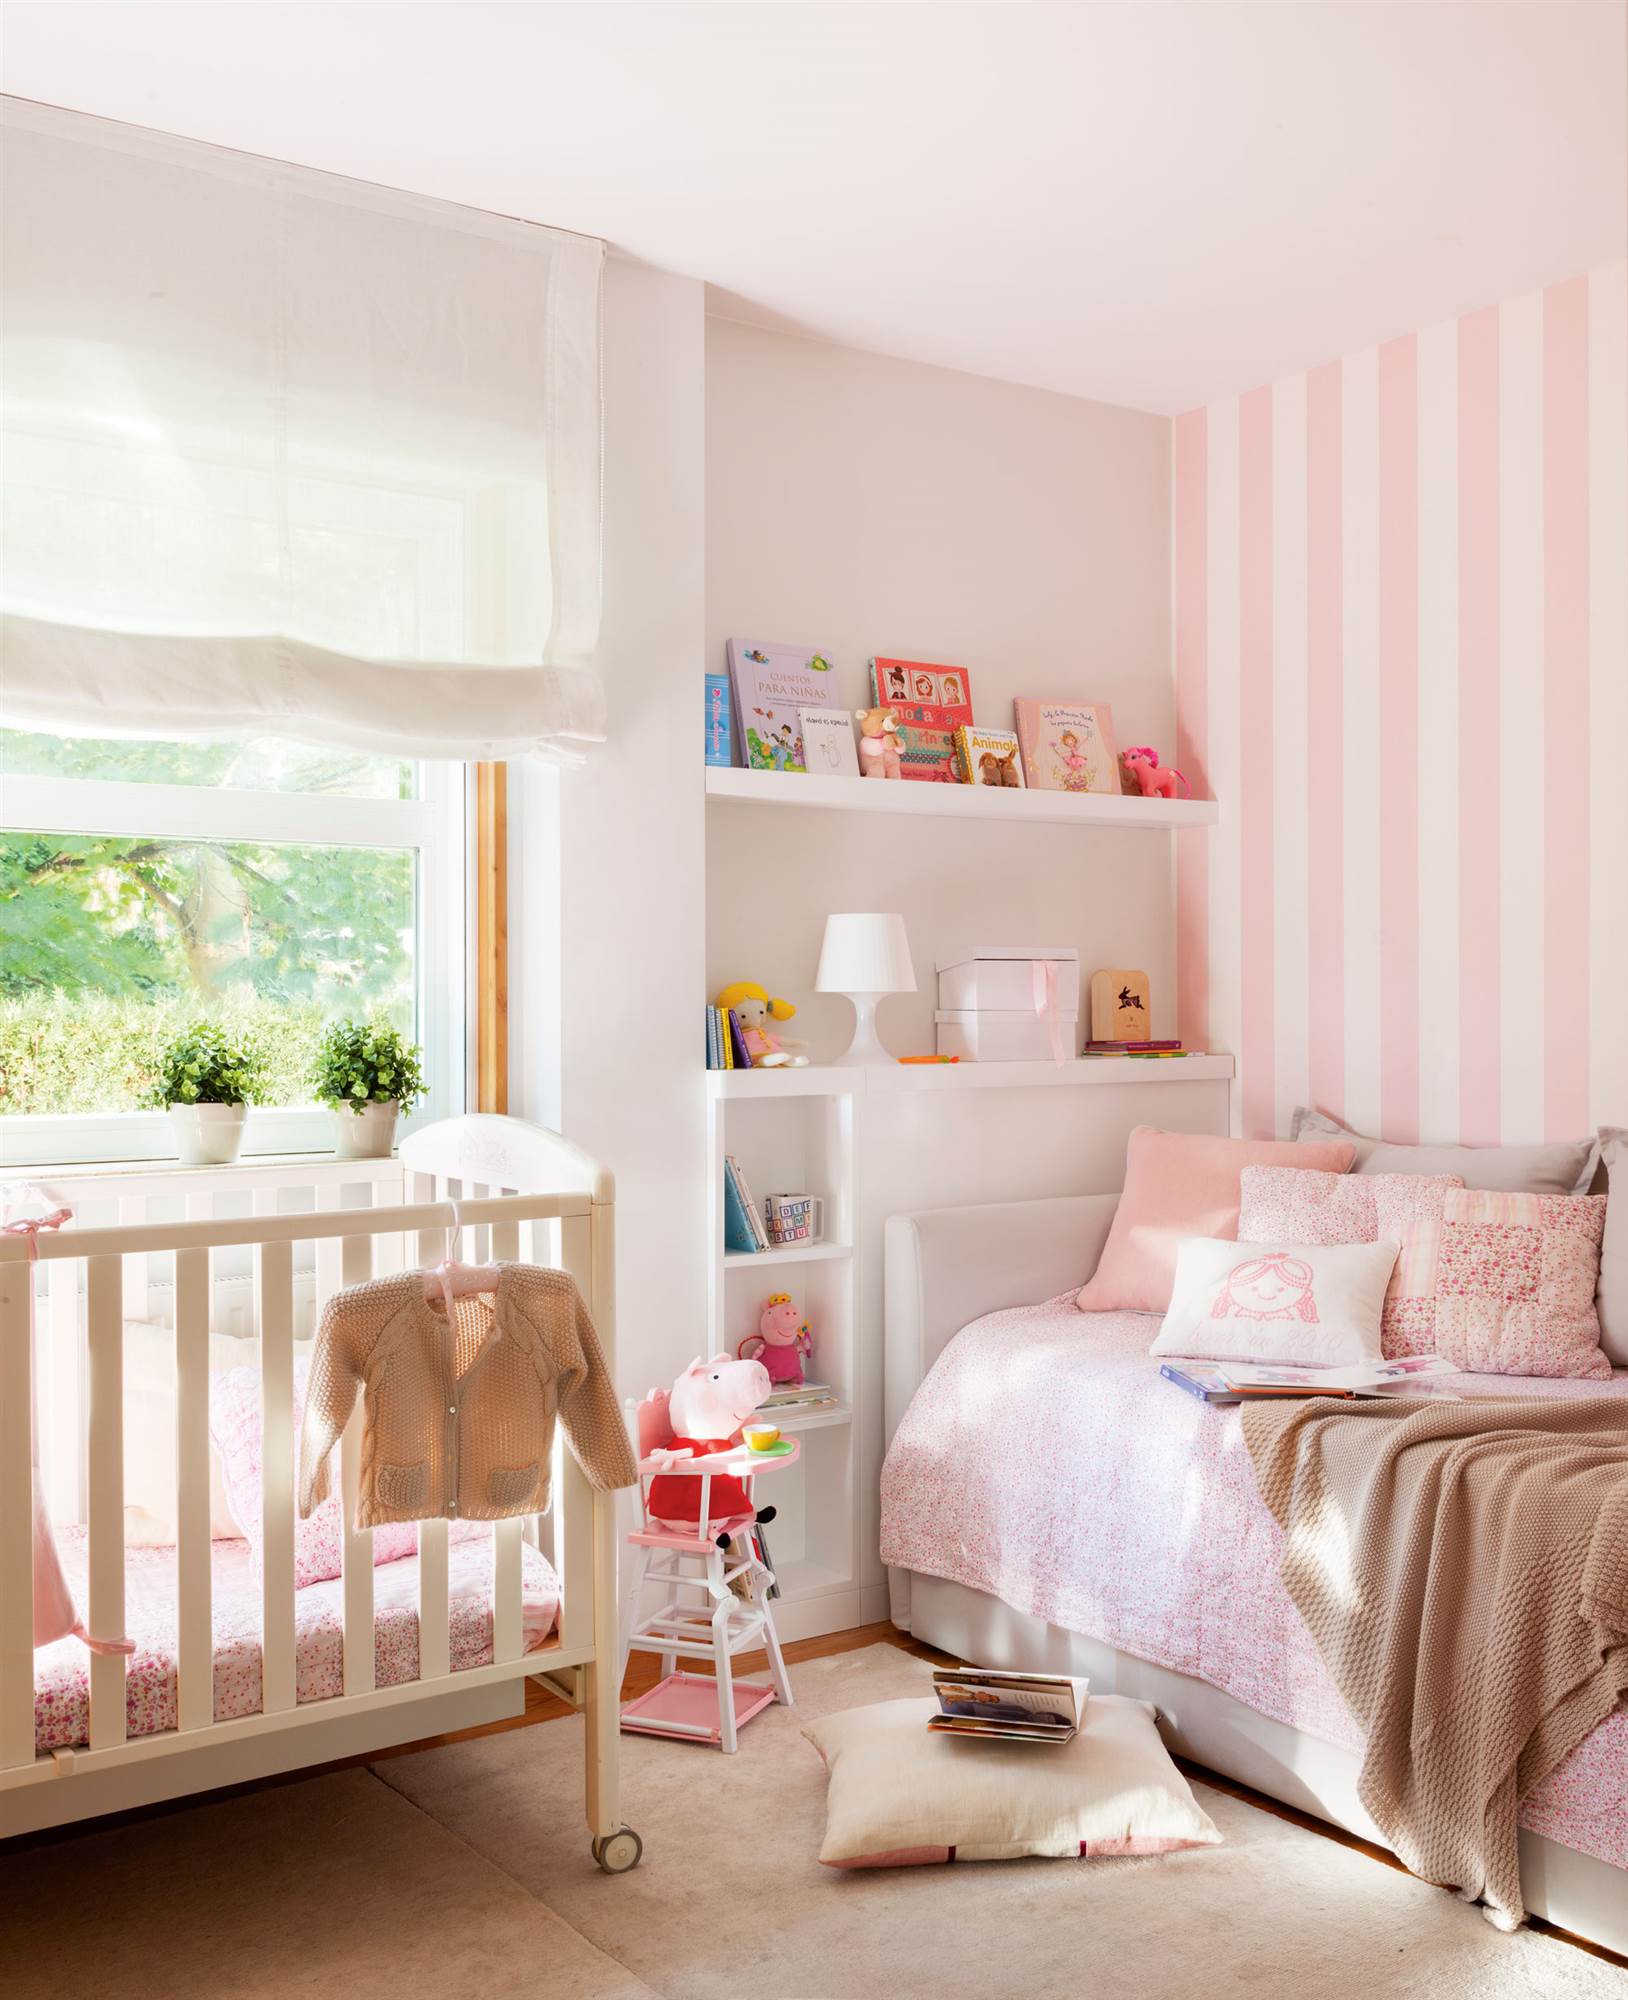 Dormitorio infantil con papel pintado rosa a rayas, ropa de cama a jeugo y cunita.